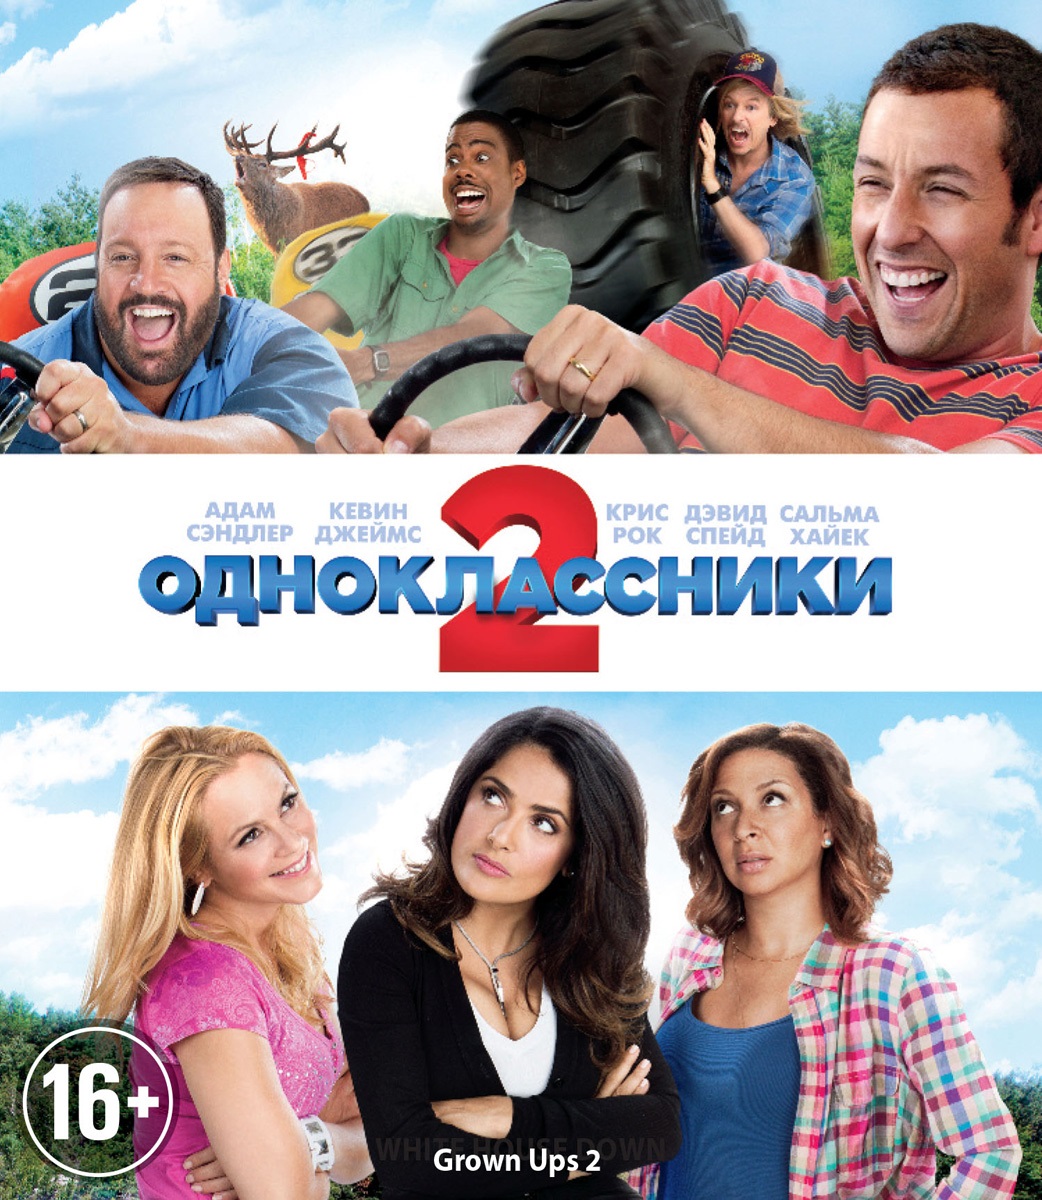 Скачать Одноклассники 2 | Grown Ups 2 (2013) HDRip 1,45Gb бесплатно